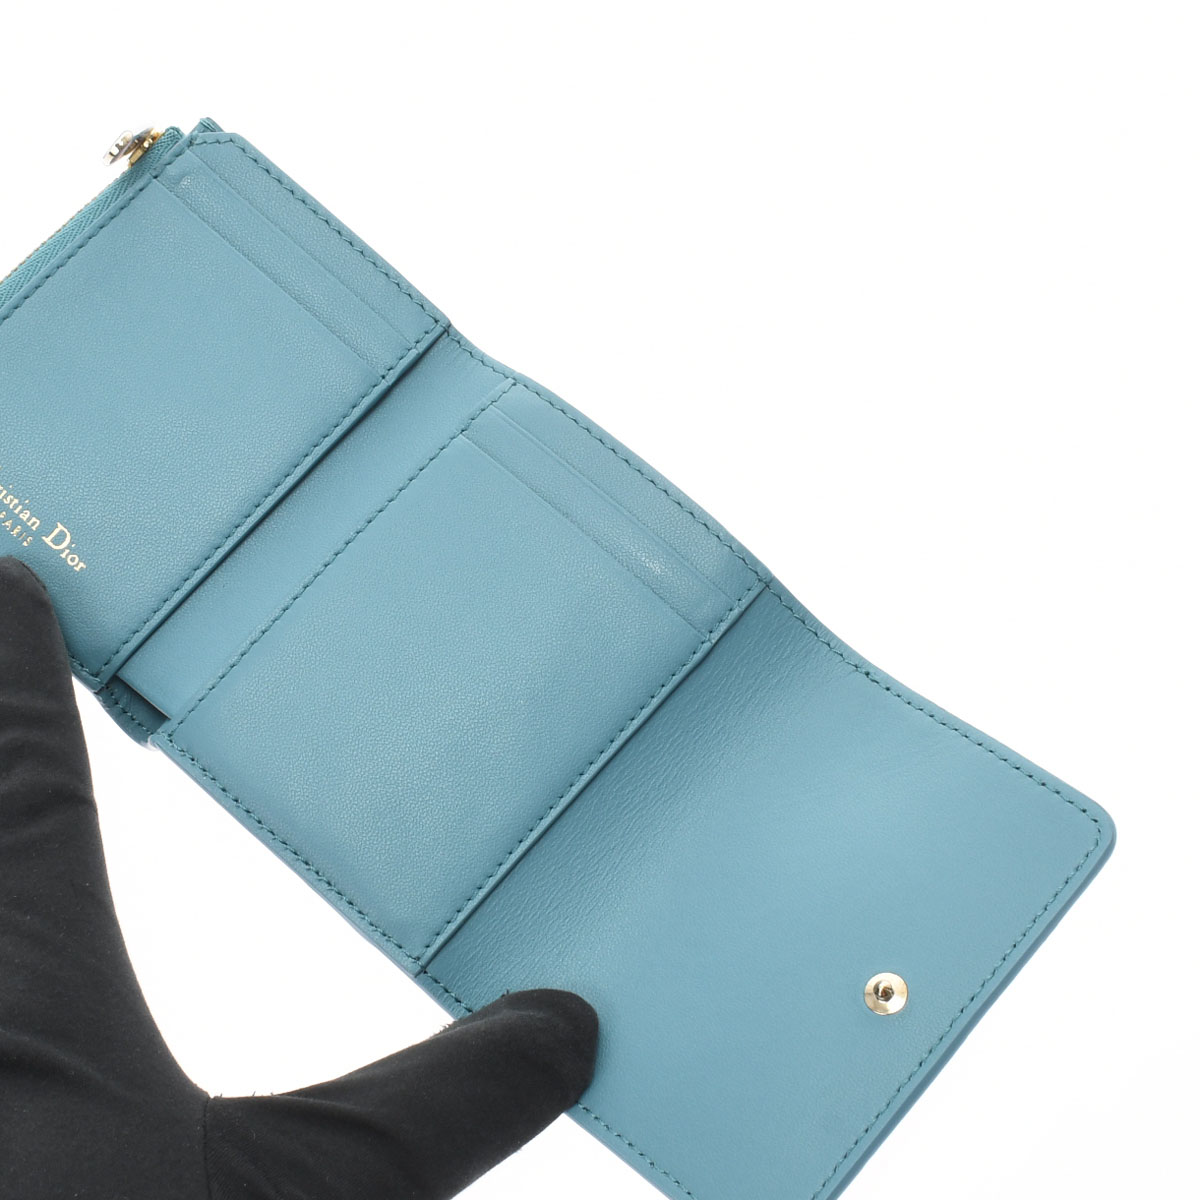 ディオール / Dior 30 MONTAIGNE ロータスウォレット 日本限定 アズールブルー S20570BAE_M08Z グレインドカーフレザー  レディース 財布 【未使用】【purse】